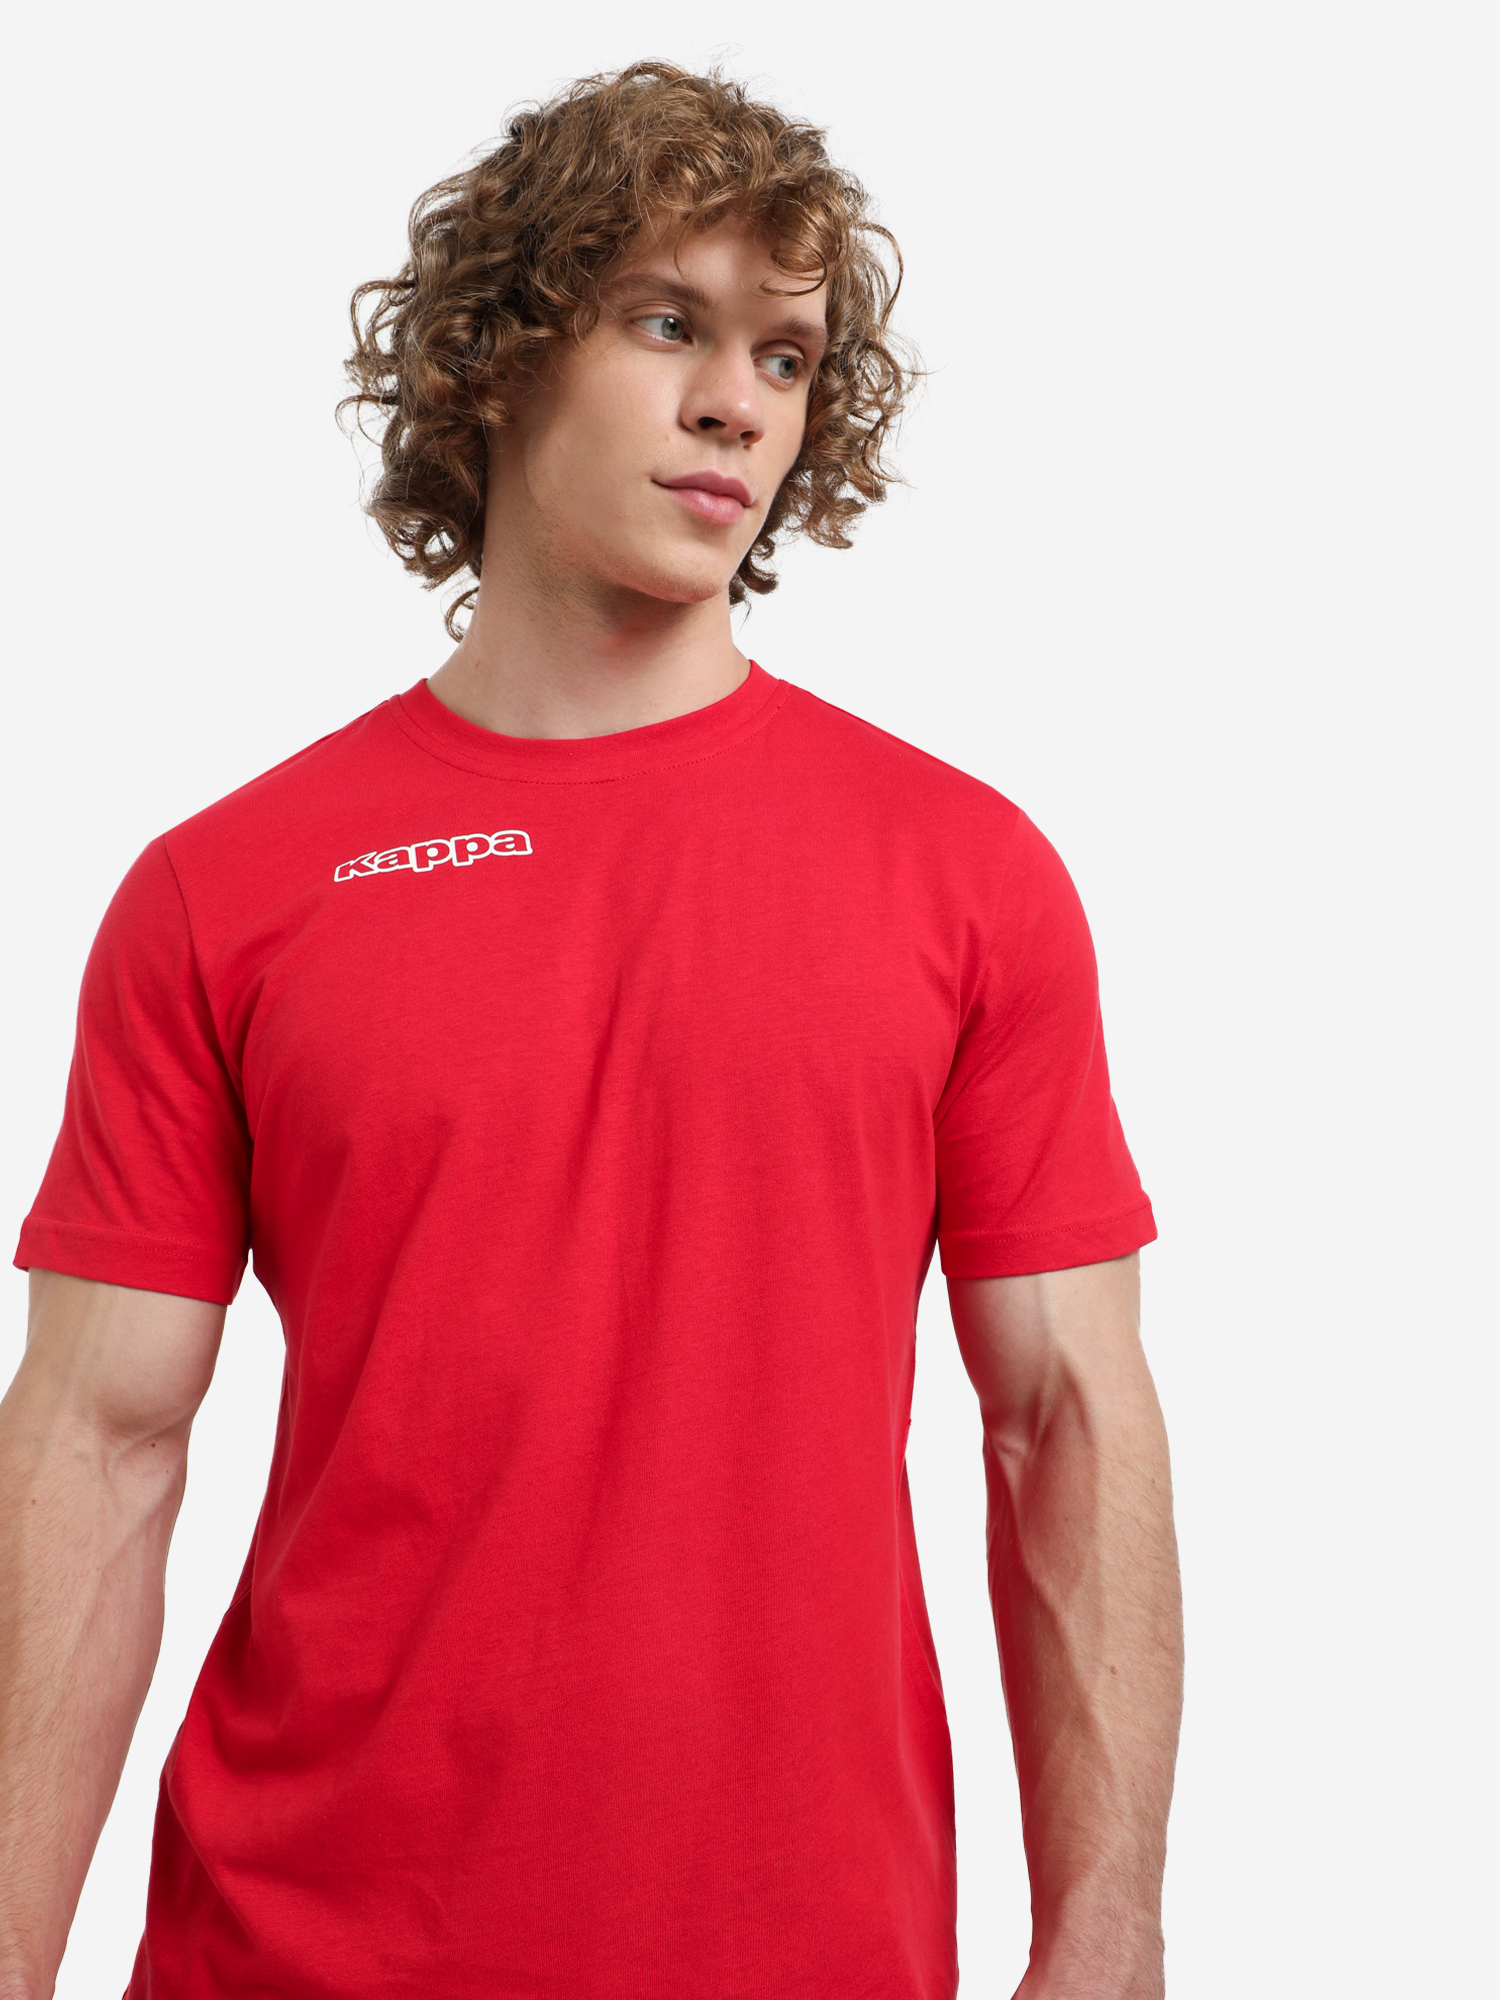 Футболка мужская Kappa, Красный футболка мужская puma teamglory красный